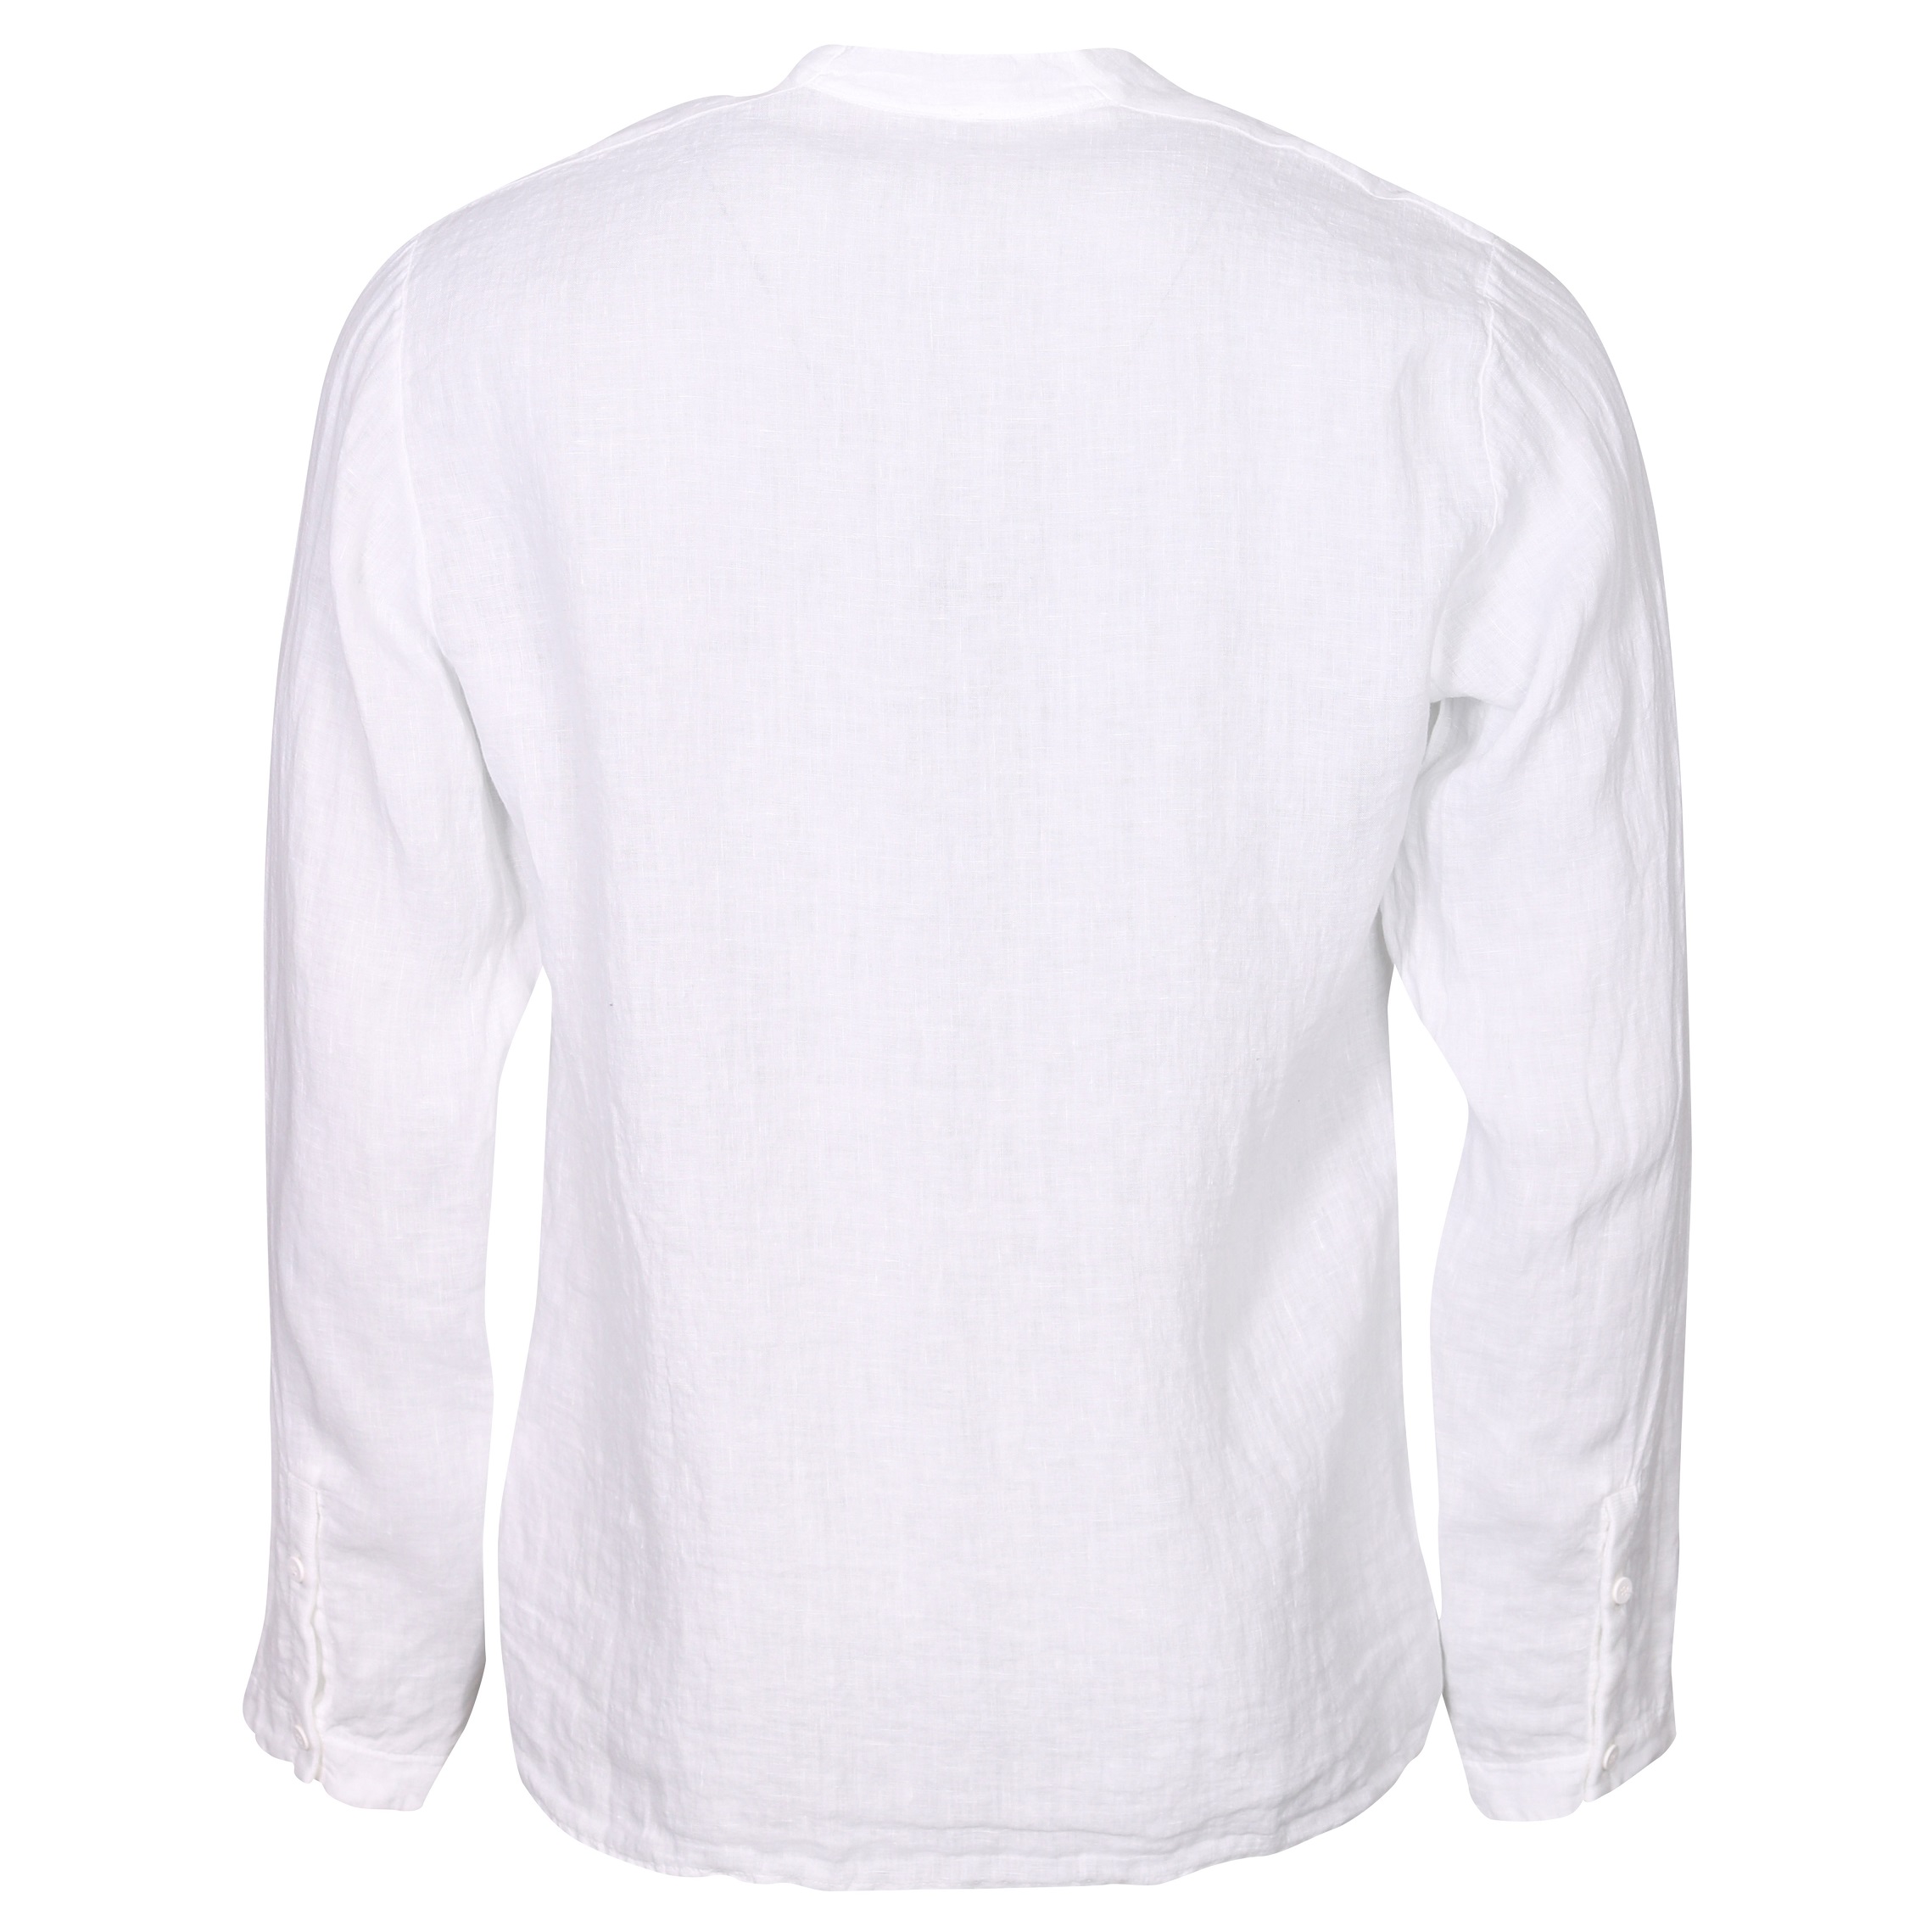 Transit Uomo Cotton Shirt in White